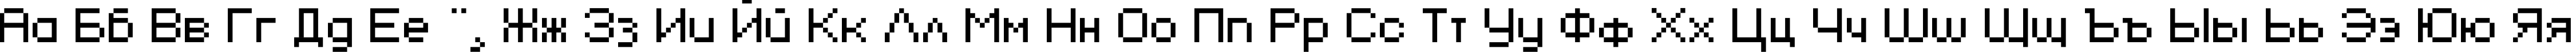 Пример написания русского алфавита шрифтом KLMN Flash Pix